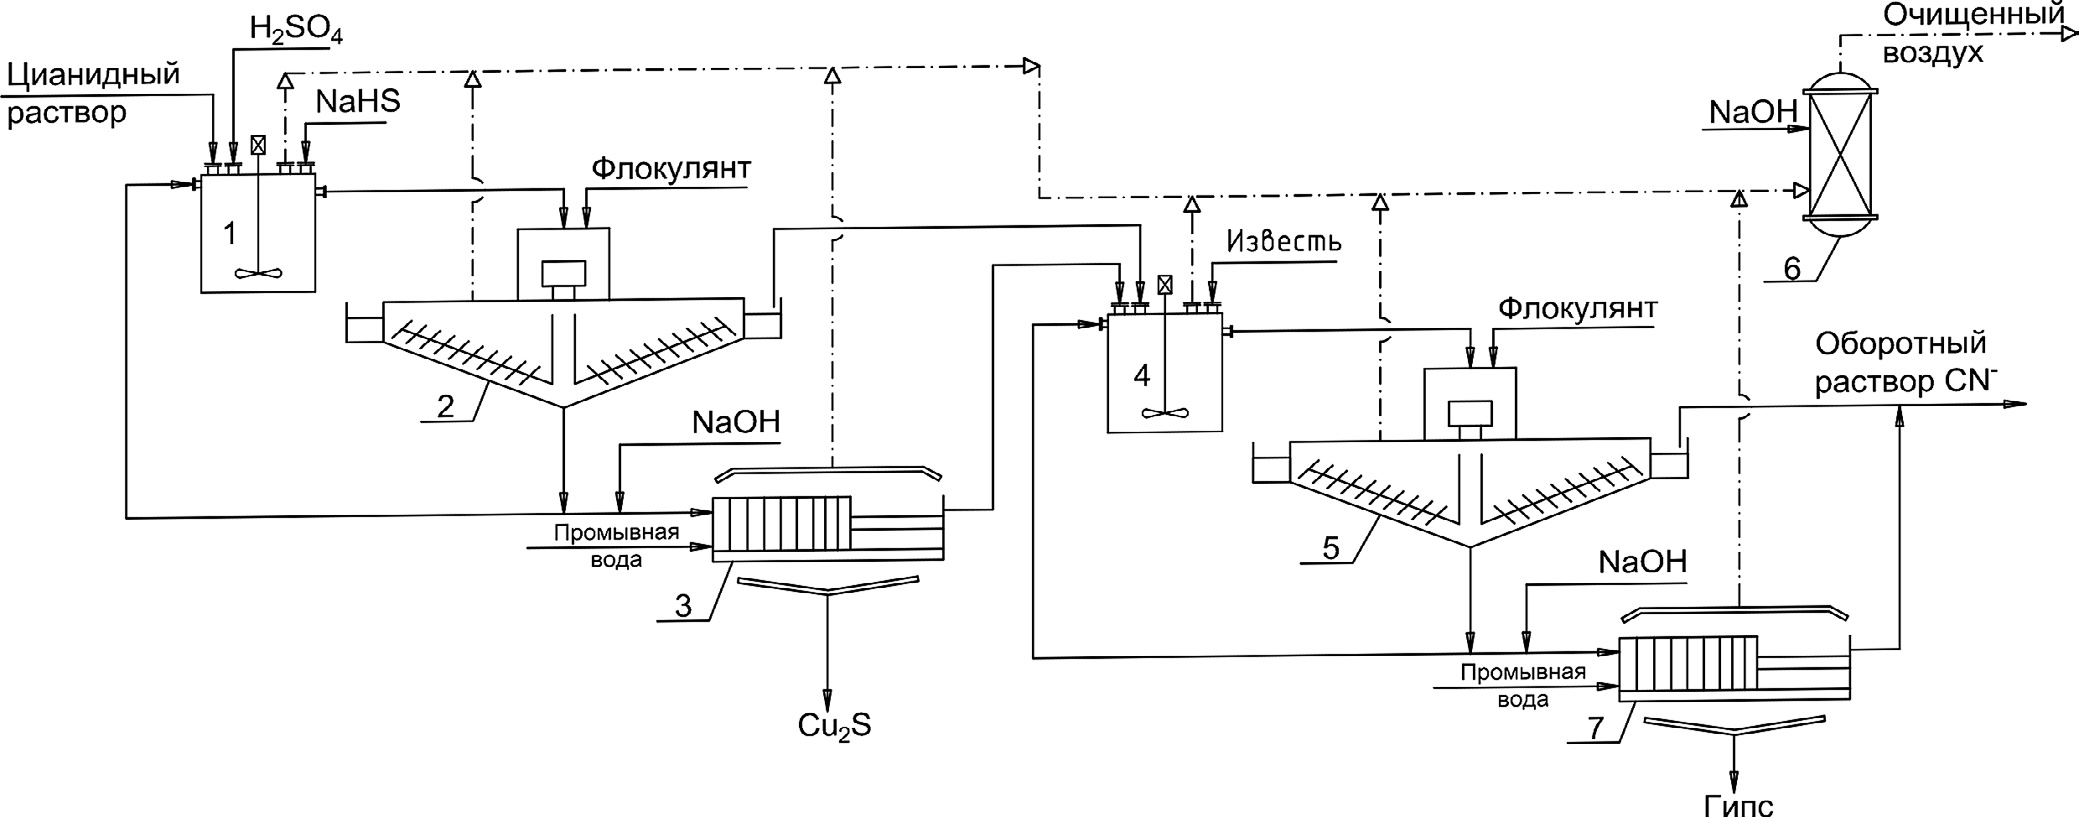 Рис. 3 Аппаратно-технологическая цепочка процесса SART: 1 – SART-реактор; 2 – сгуститель; 3 – фильтр; 4 – нейтрализатор; 5 – сгуститель для осаждения гипса; 6 – скруббер; 7 – фильтр Fig. 3 Hardware and process chain of the SART process: 1 – SART reactor tank; 2 – Precipitate thickener; 3 – Filter; 4 – Neutralization tank; 5 – Gypsum thickener; 6 – Scrubber; 7 – Filter